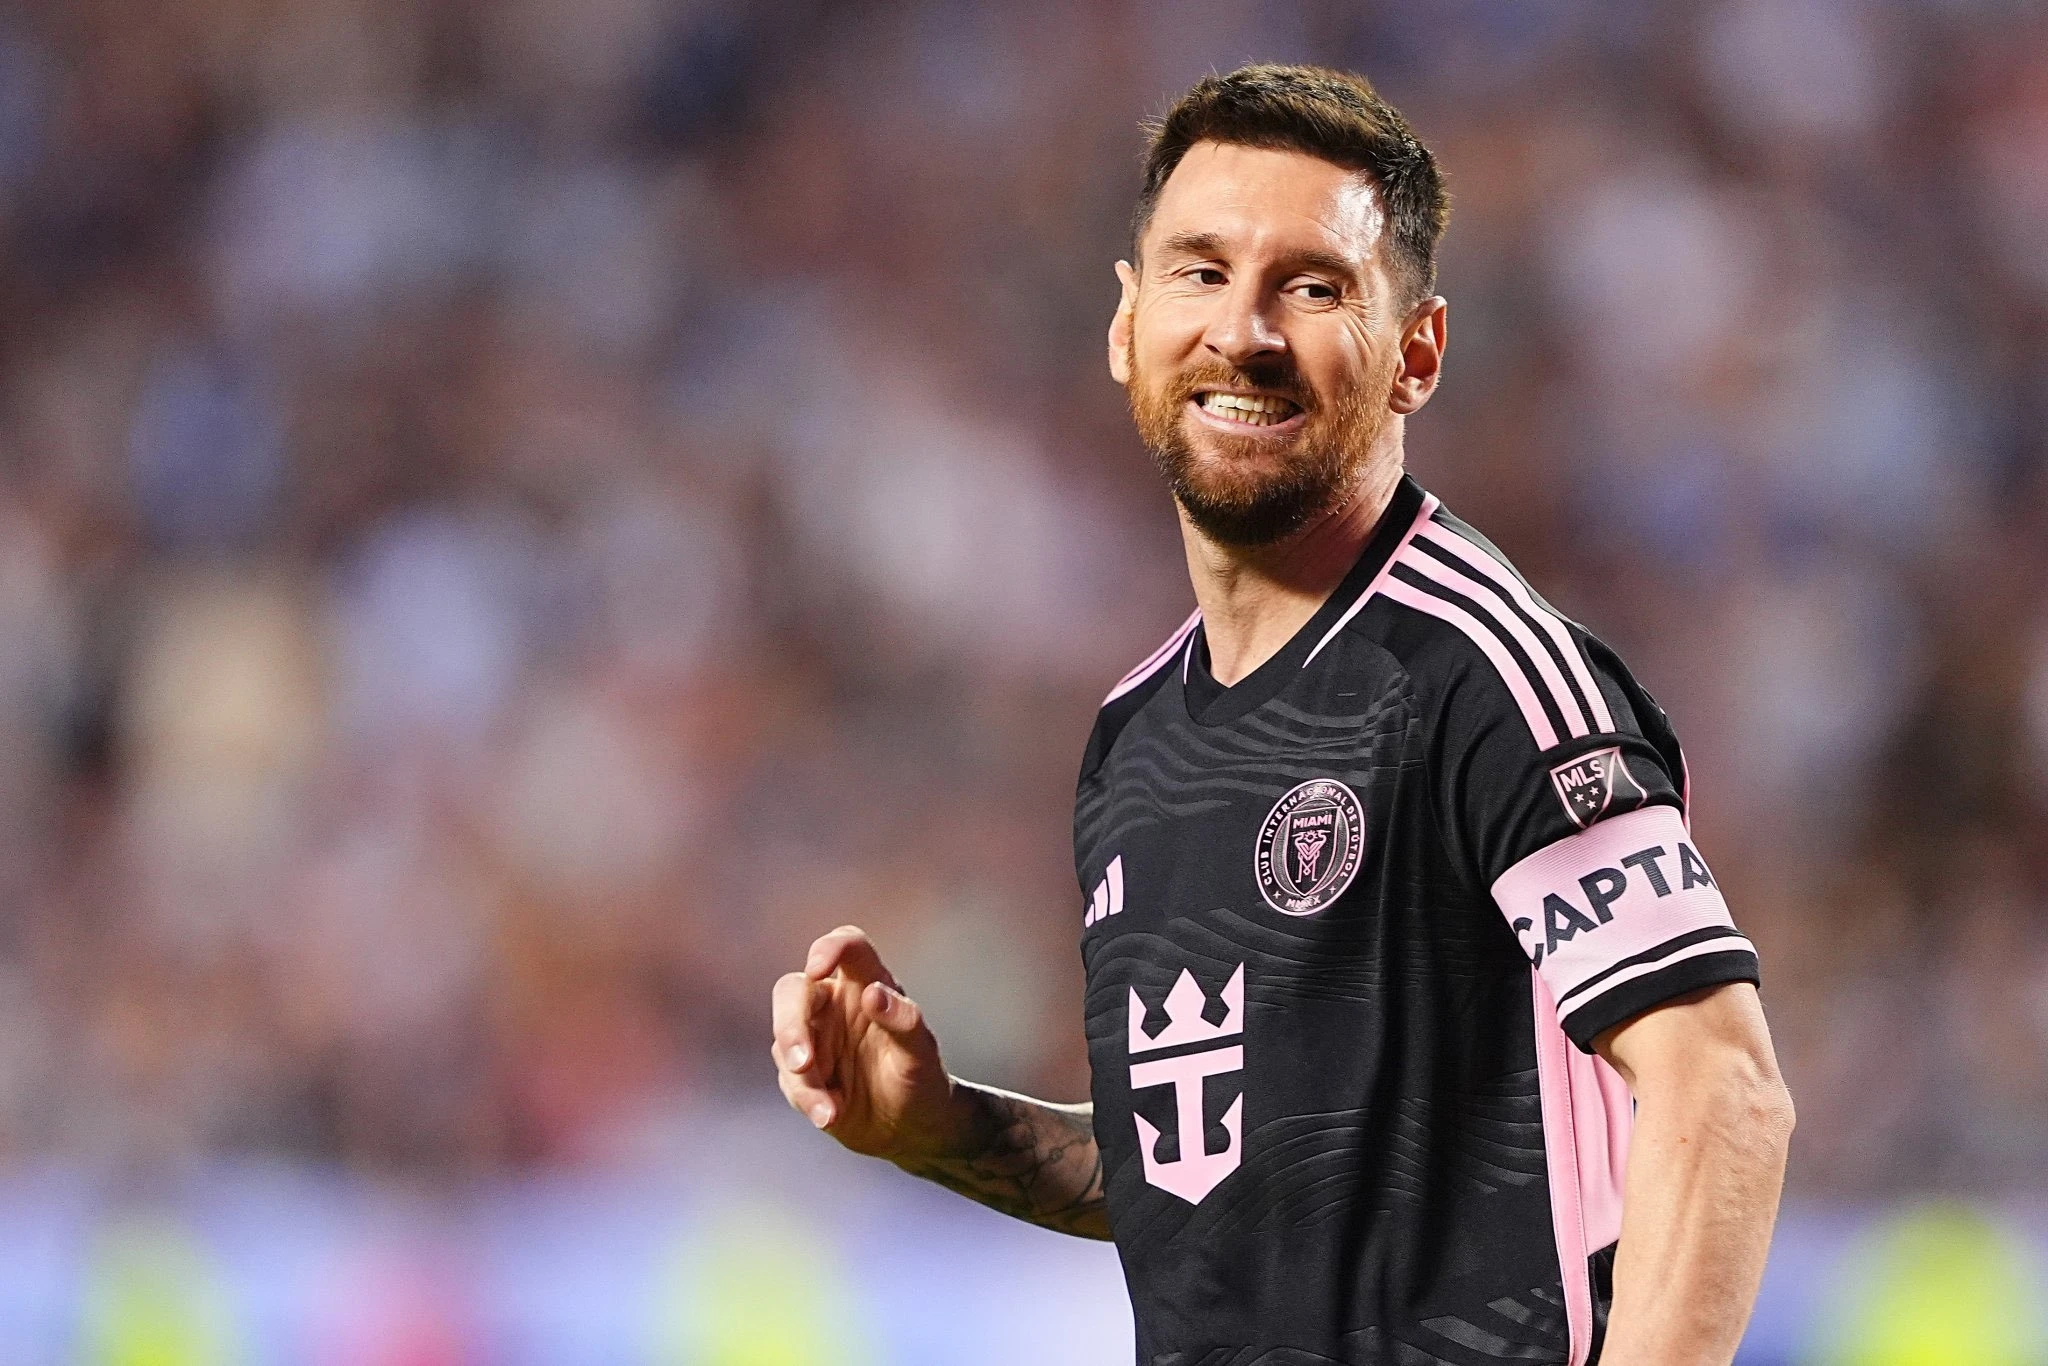 Messi lại làm bùng nổ bóng đá Mỹ